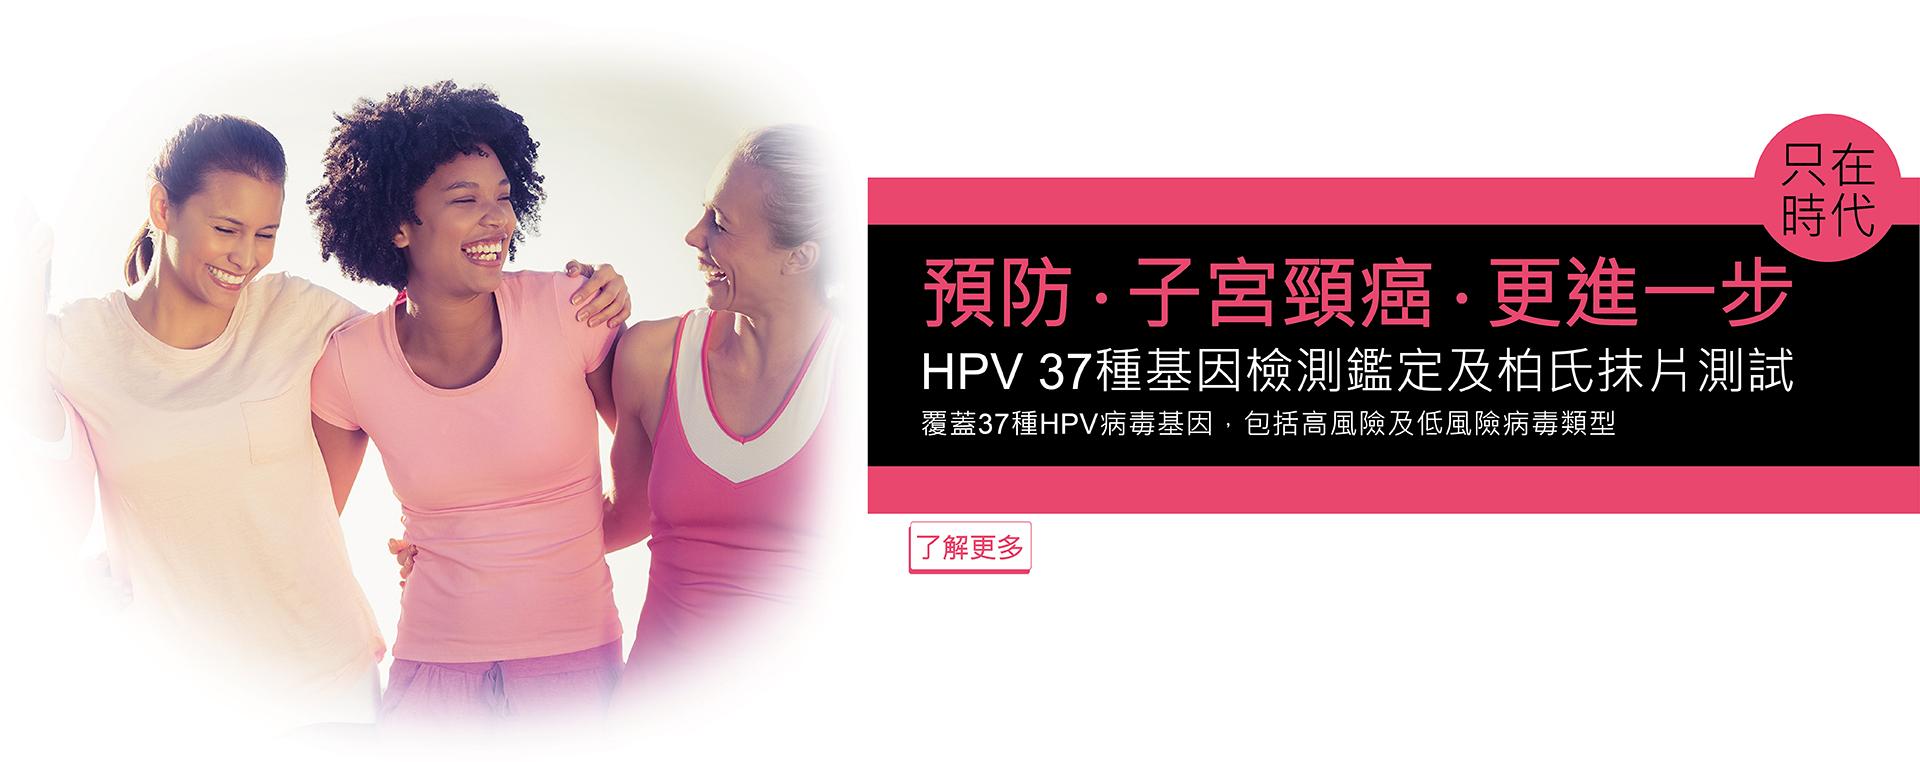 HPV 37種基因檢測鑑定及柏氏抹片測試